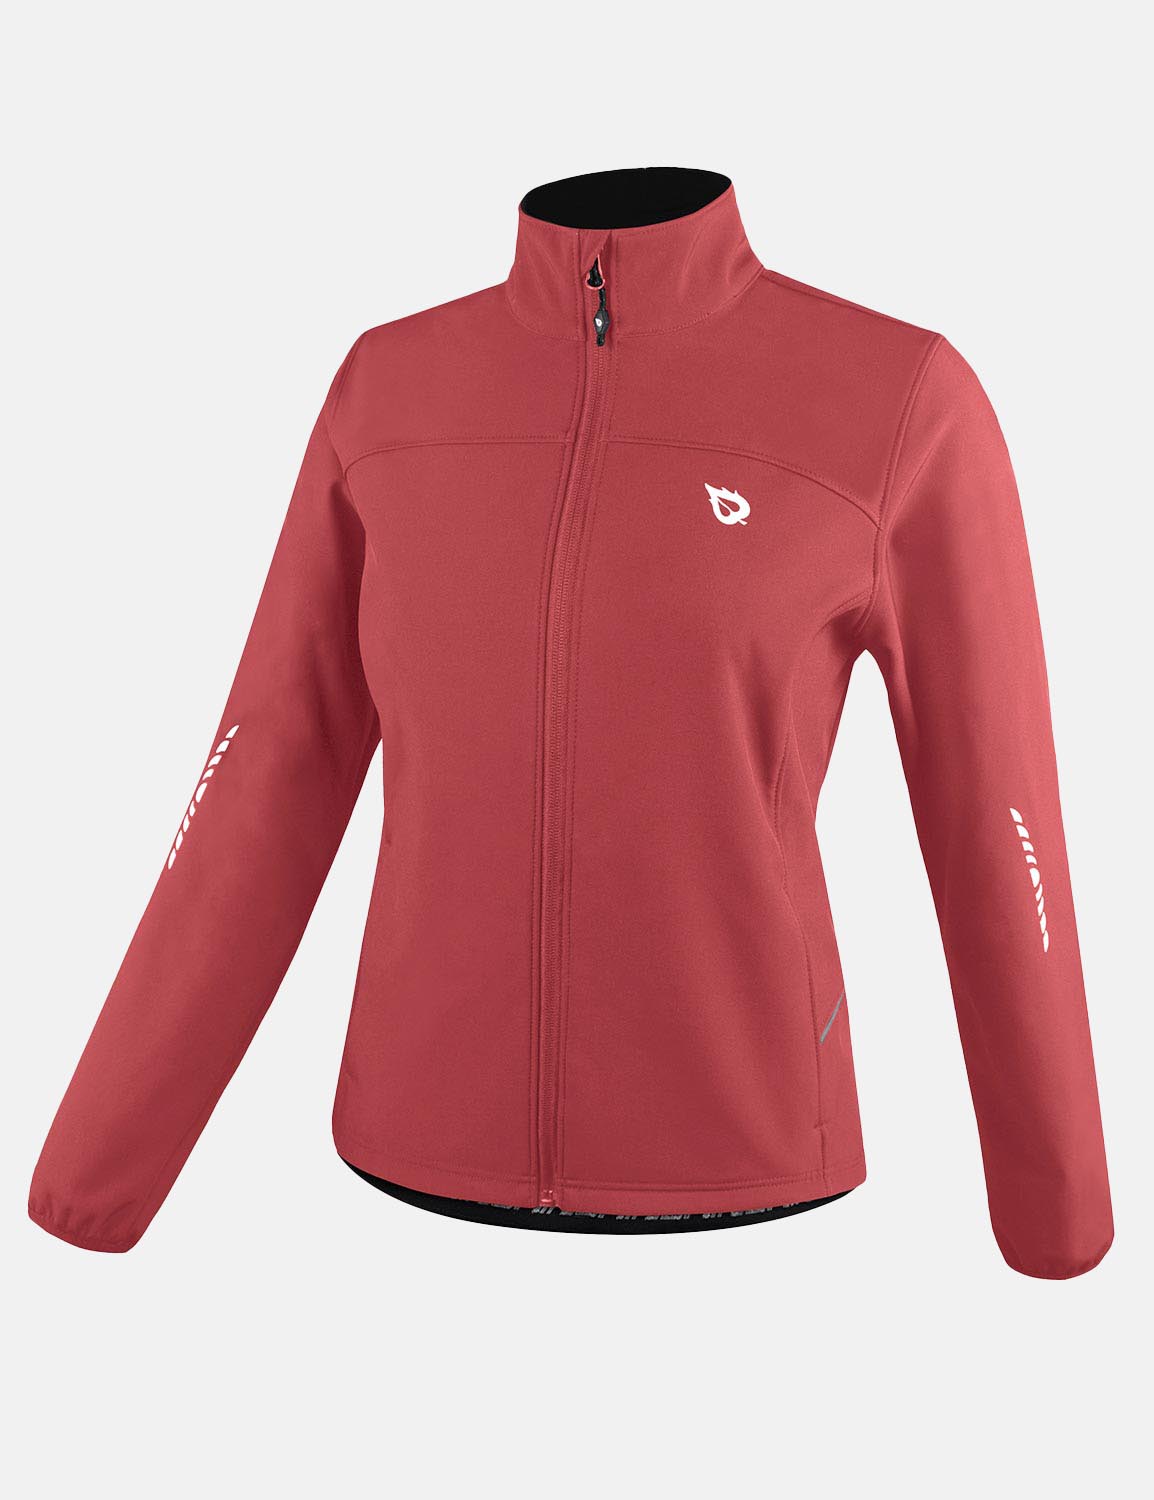 Baleaf Women's Wind- & Waterproof Thermal Long Sleeved Cycling Jacket aaa464 Poppy Red Side